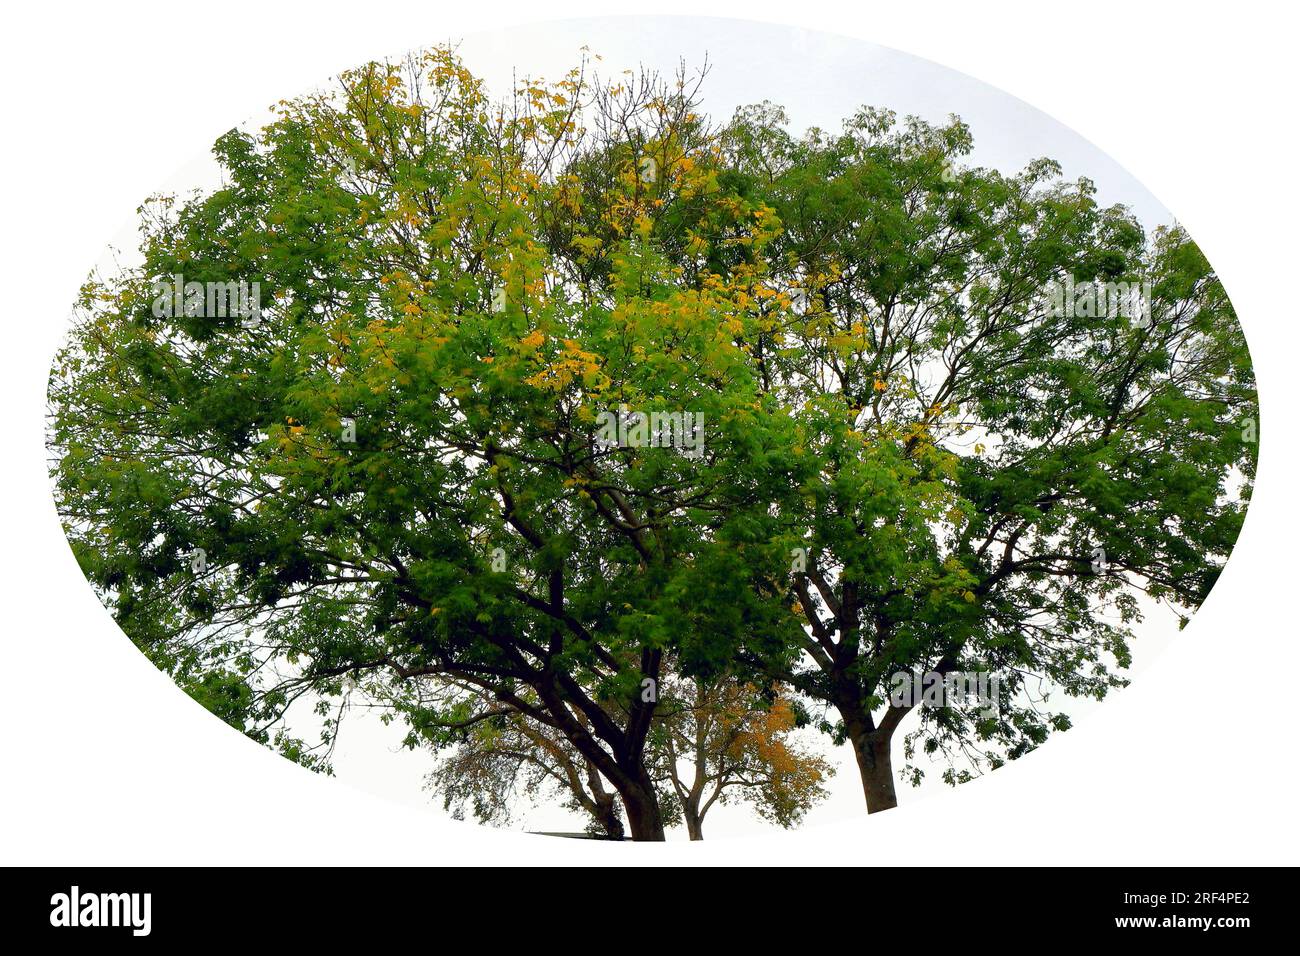 European Ash treetops, autumn shades, set in a white vignette. Stock Photo